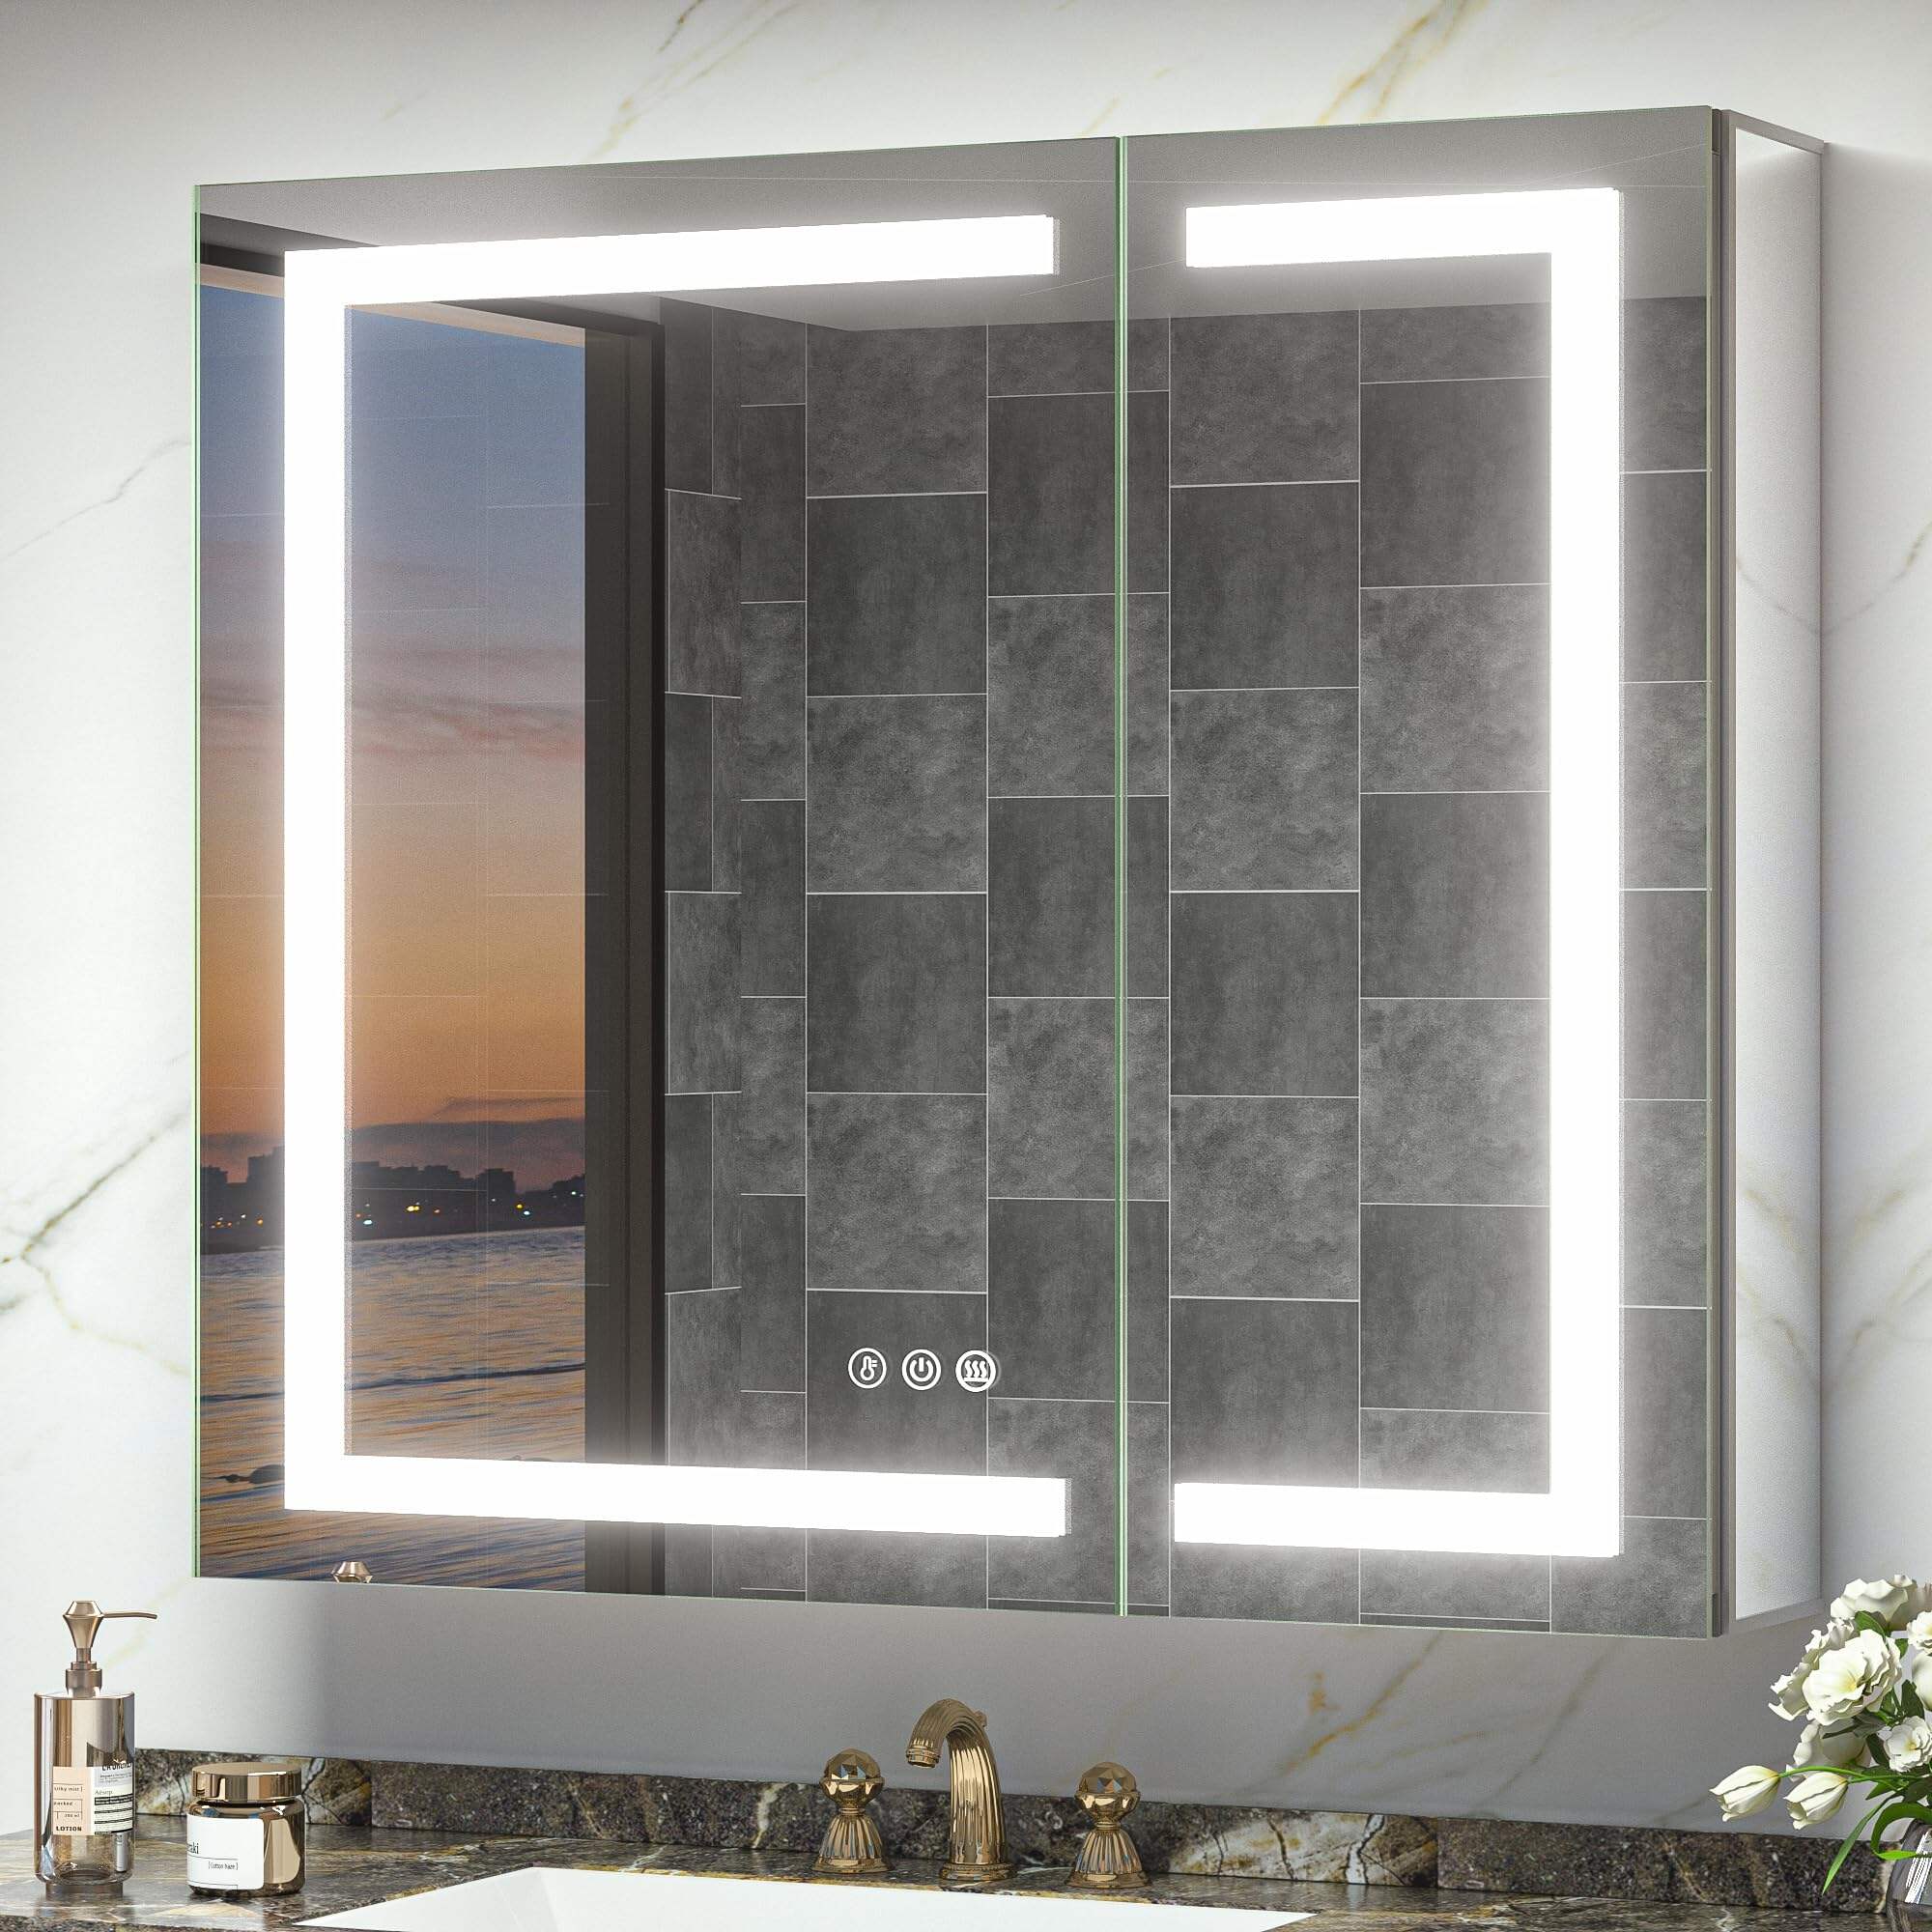 Foshan Haohan Smart Home Co., Ltd. 36 x 32 beleuchteter Medizinschrank mit Spiegel, Steckdose, Frontbeleuchtung, beschlagfrei, 3 Farben, Temperatur dimmbar, Aufputz- oder Einbaumontage für Badezimmer-Waschtisch und modernes Dekor